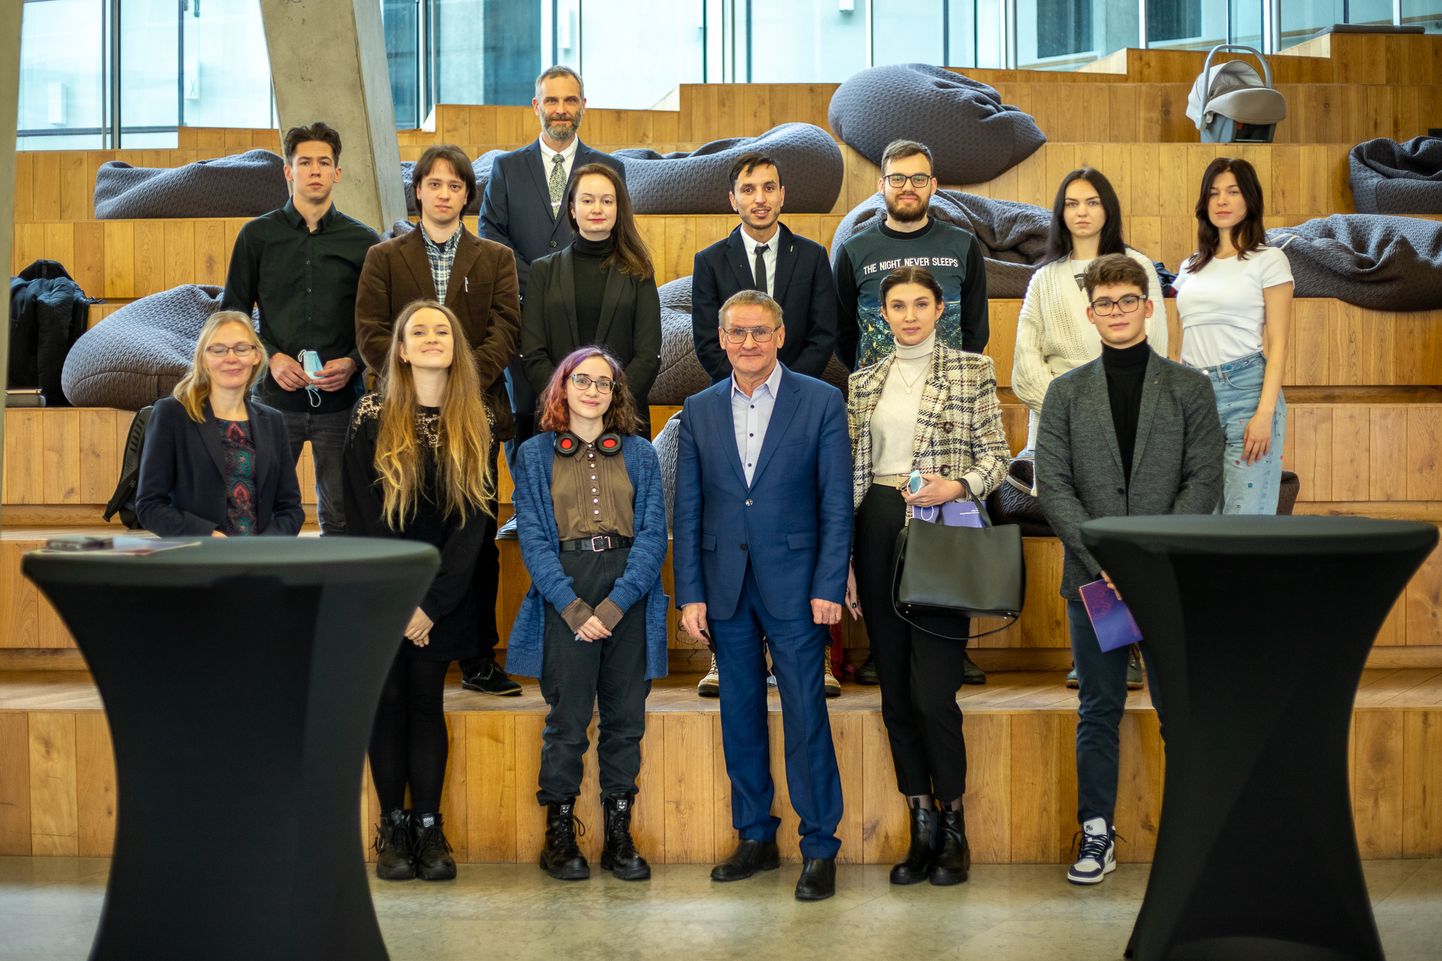 Kliimakogus osalenud noored pildil koos minister Jaak Aabiga.